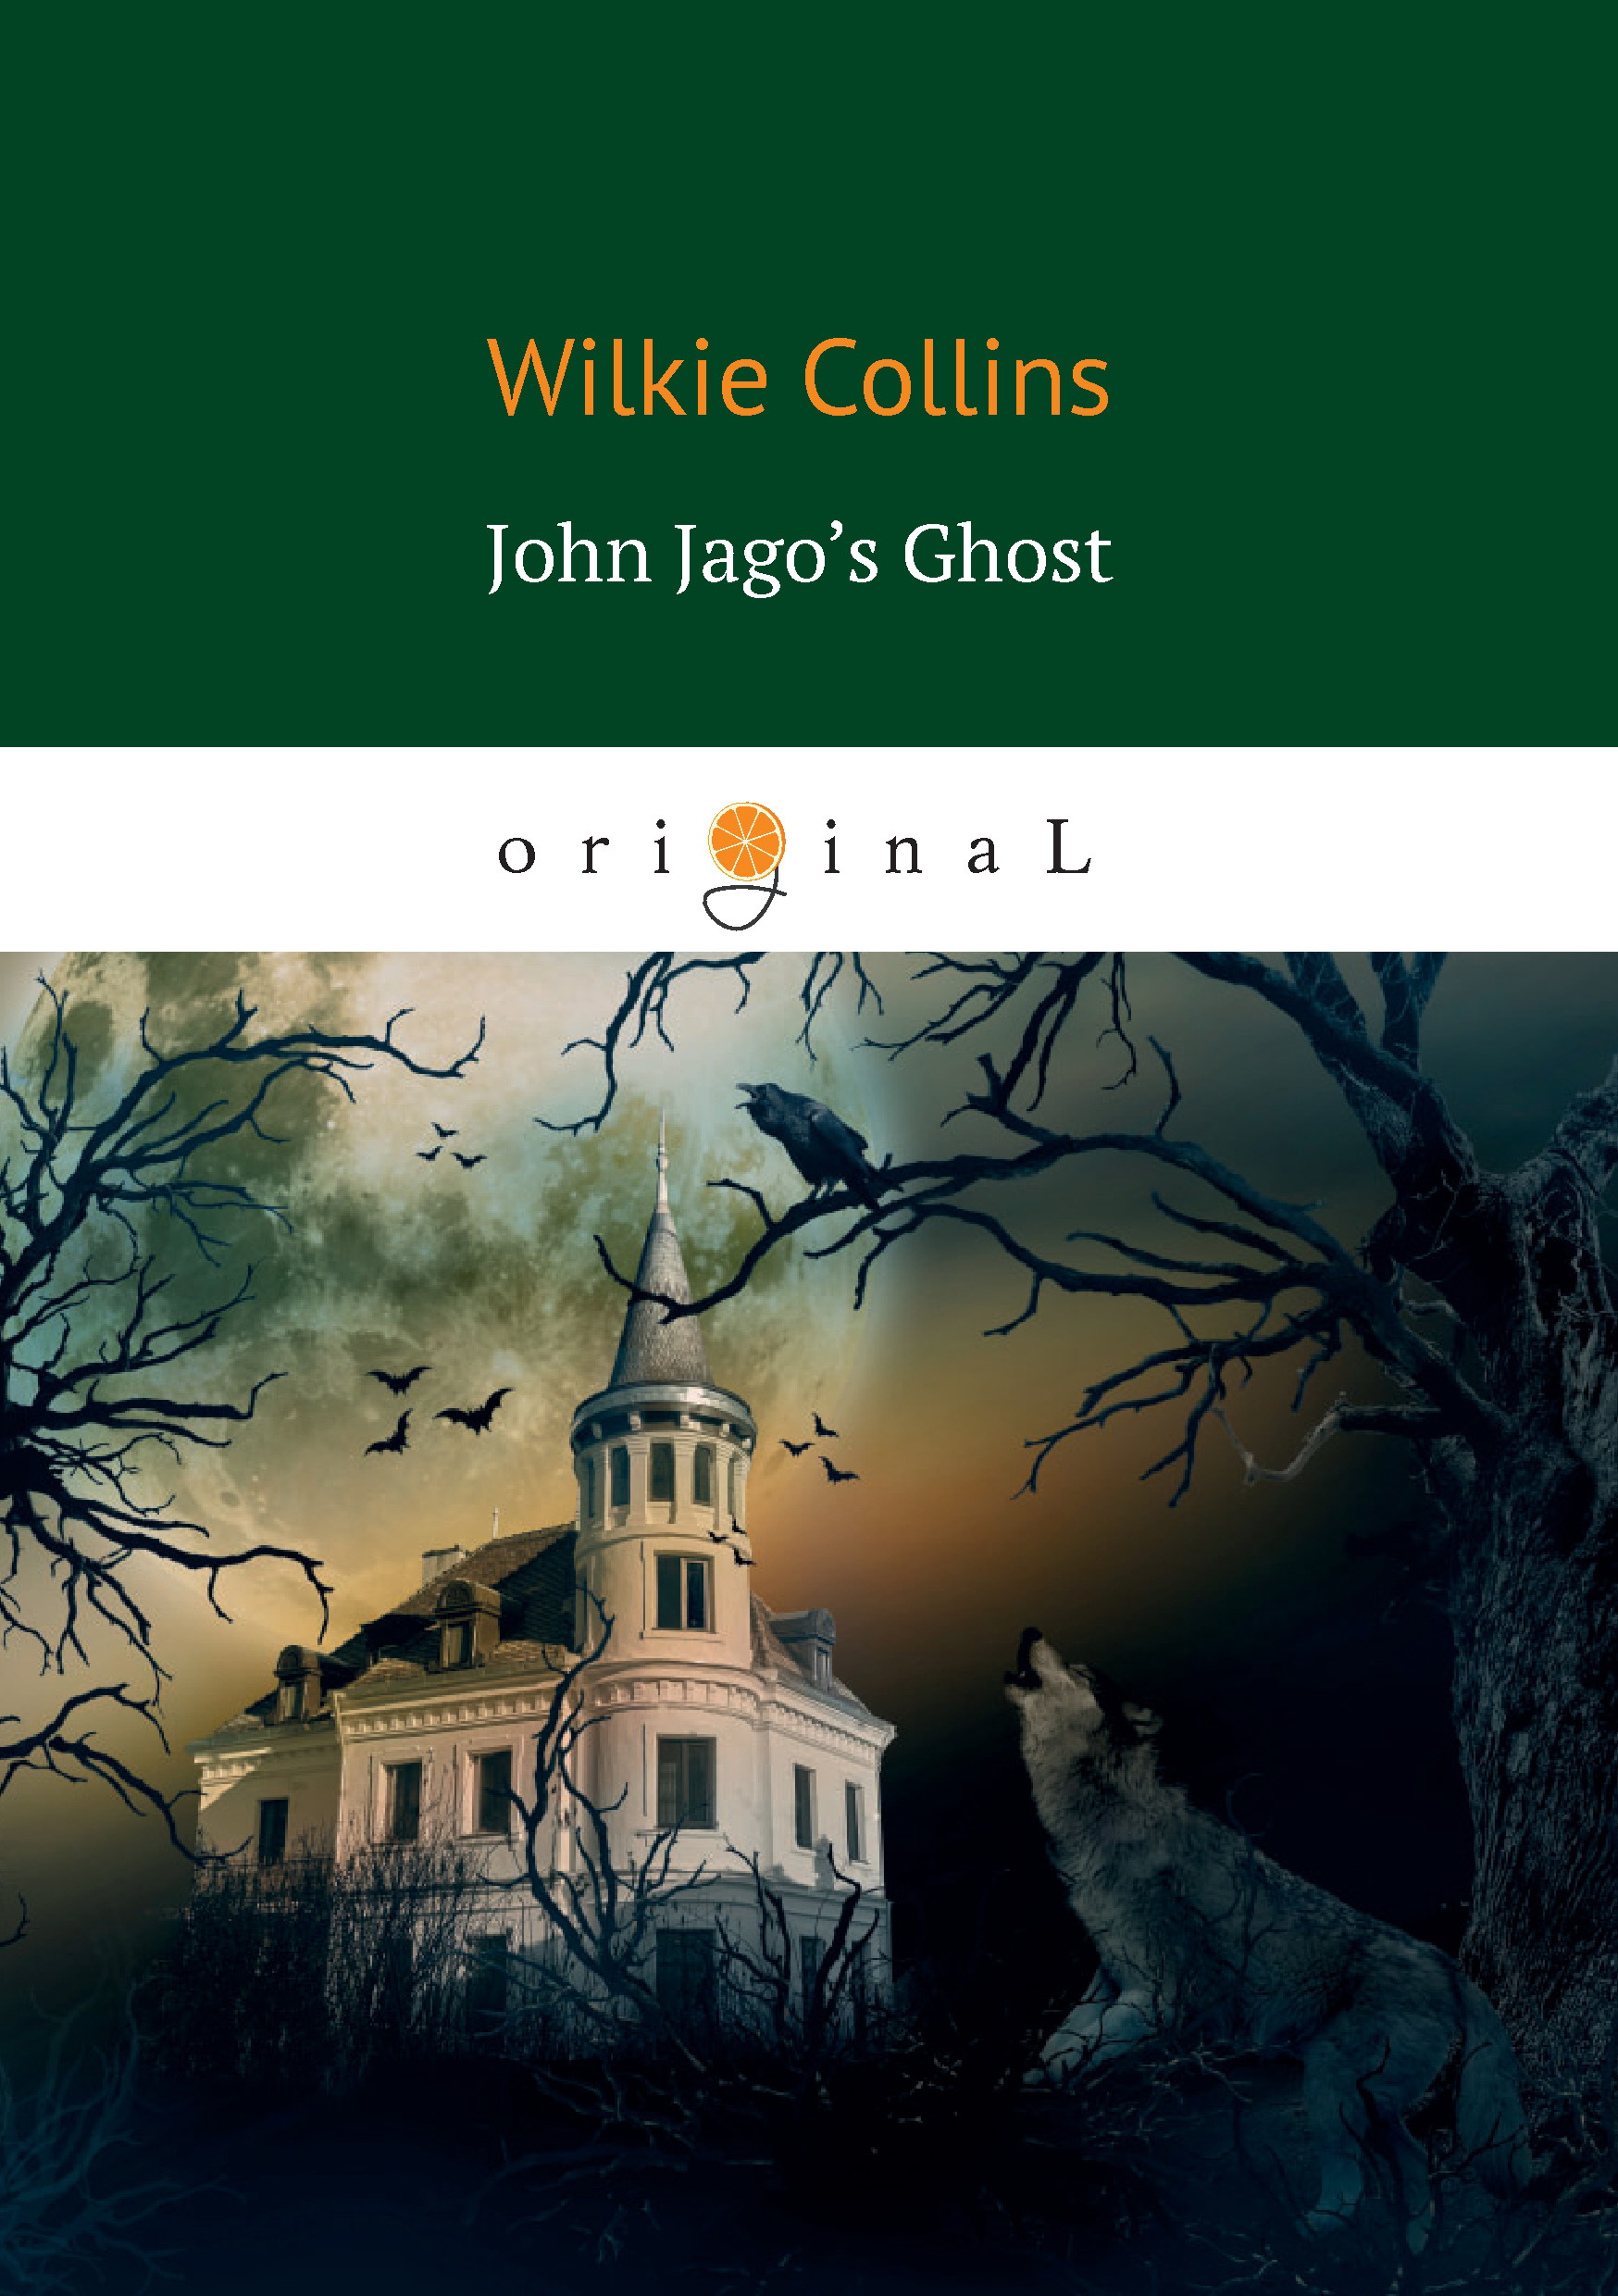 Книга John Jago’s Ghost из серии , созданная Уильям Уилки Коллинз, может относится к жанру Классические детективы, Литература 19 века. Стоимость электронной книги John Jago’s Ghost с идентификатором 34341041 составляет 199.00 руб.